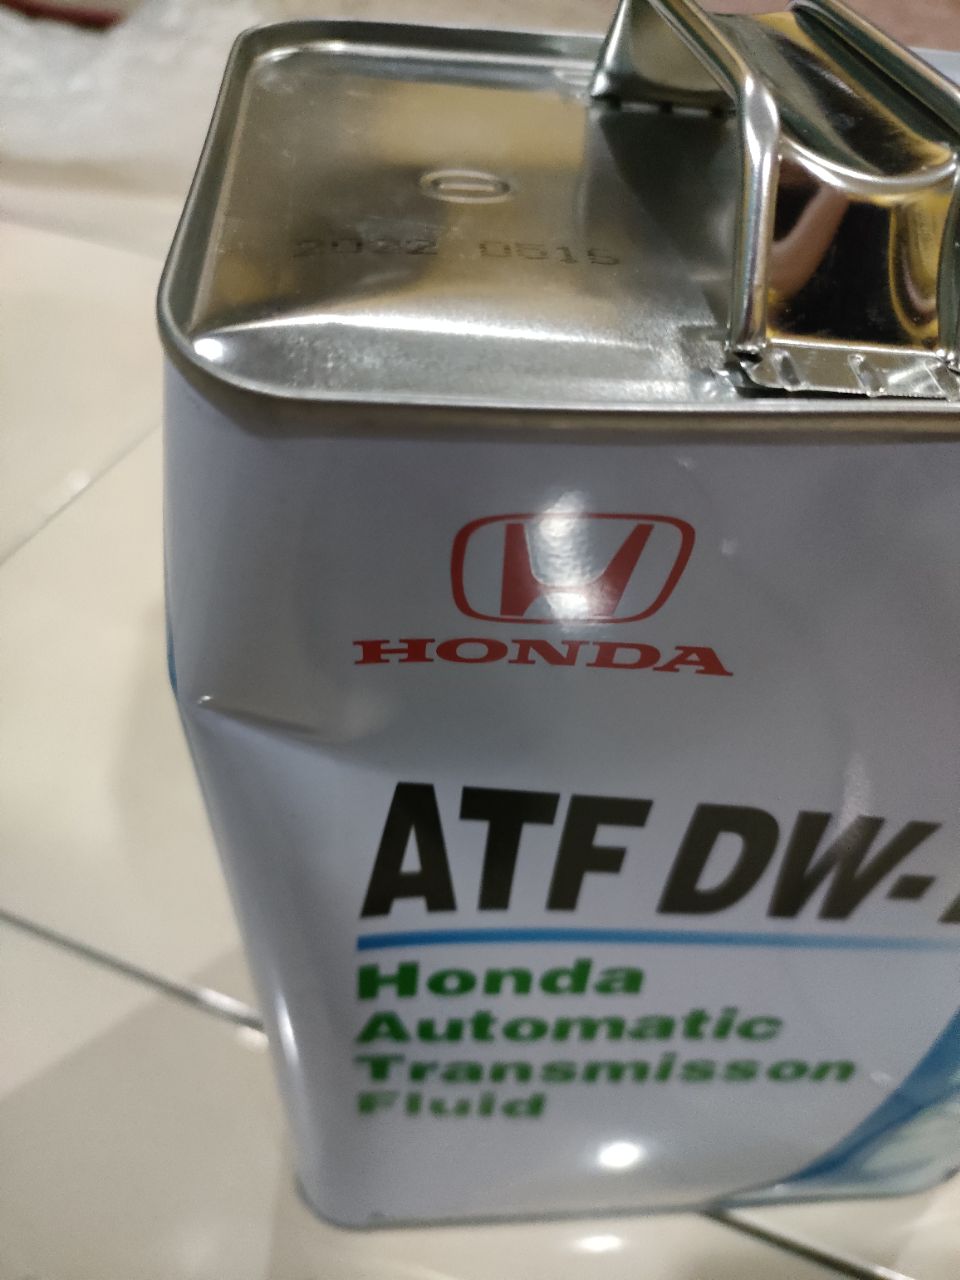 08266-99964 Honda Ultra DW-1 ATF gear oil (4 liter) DW1 for Honda